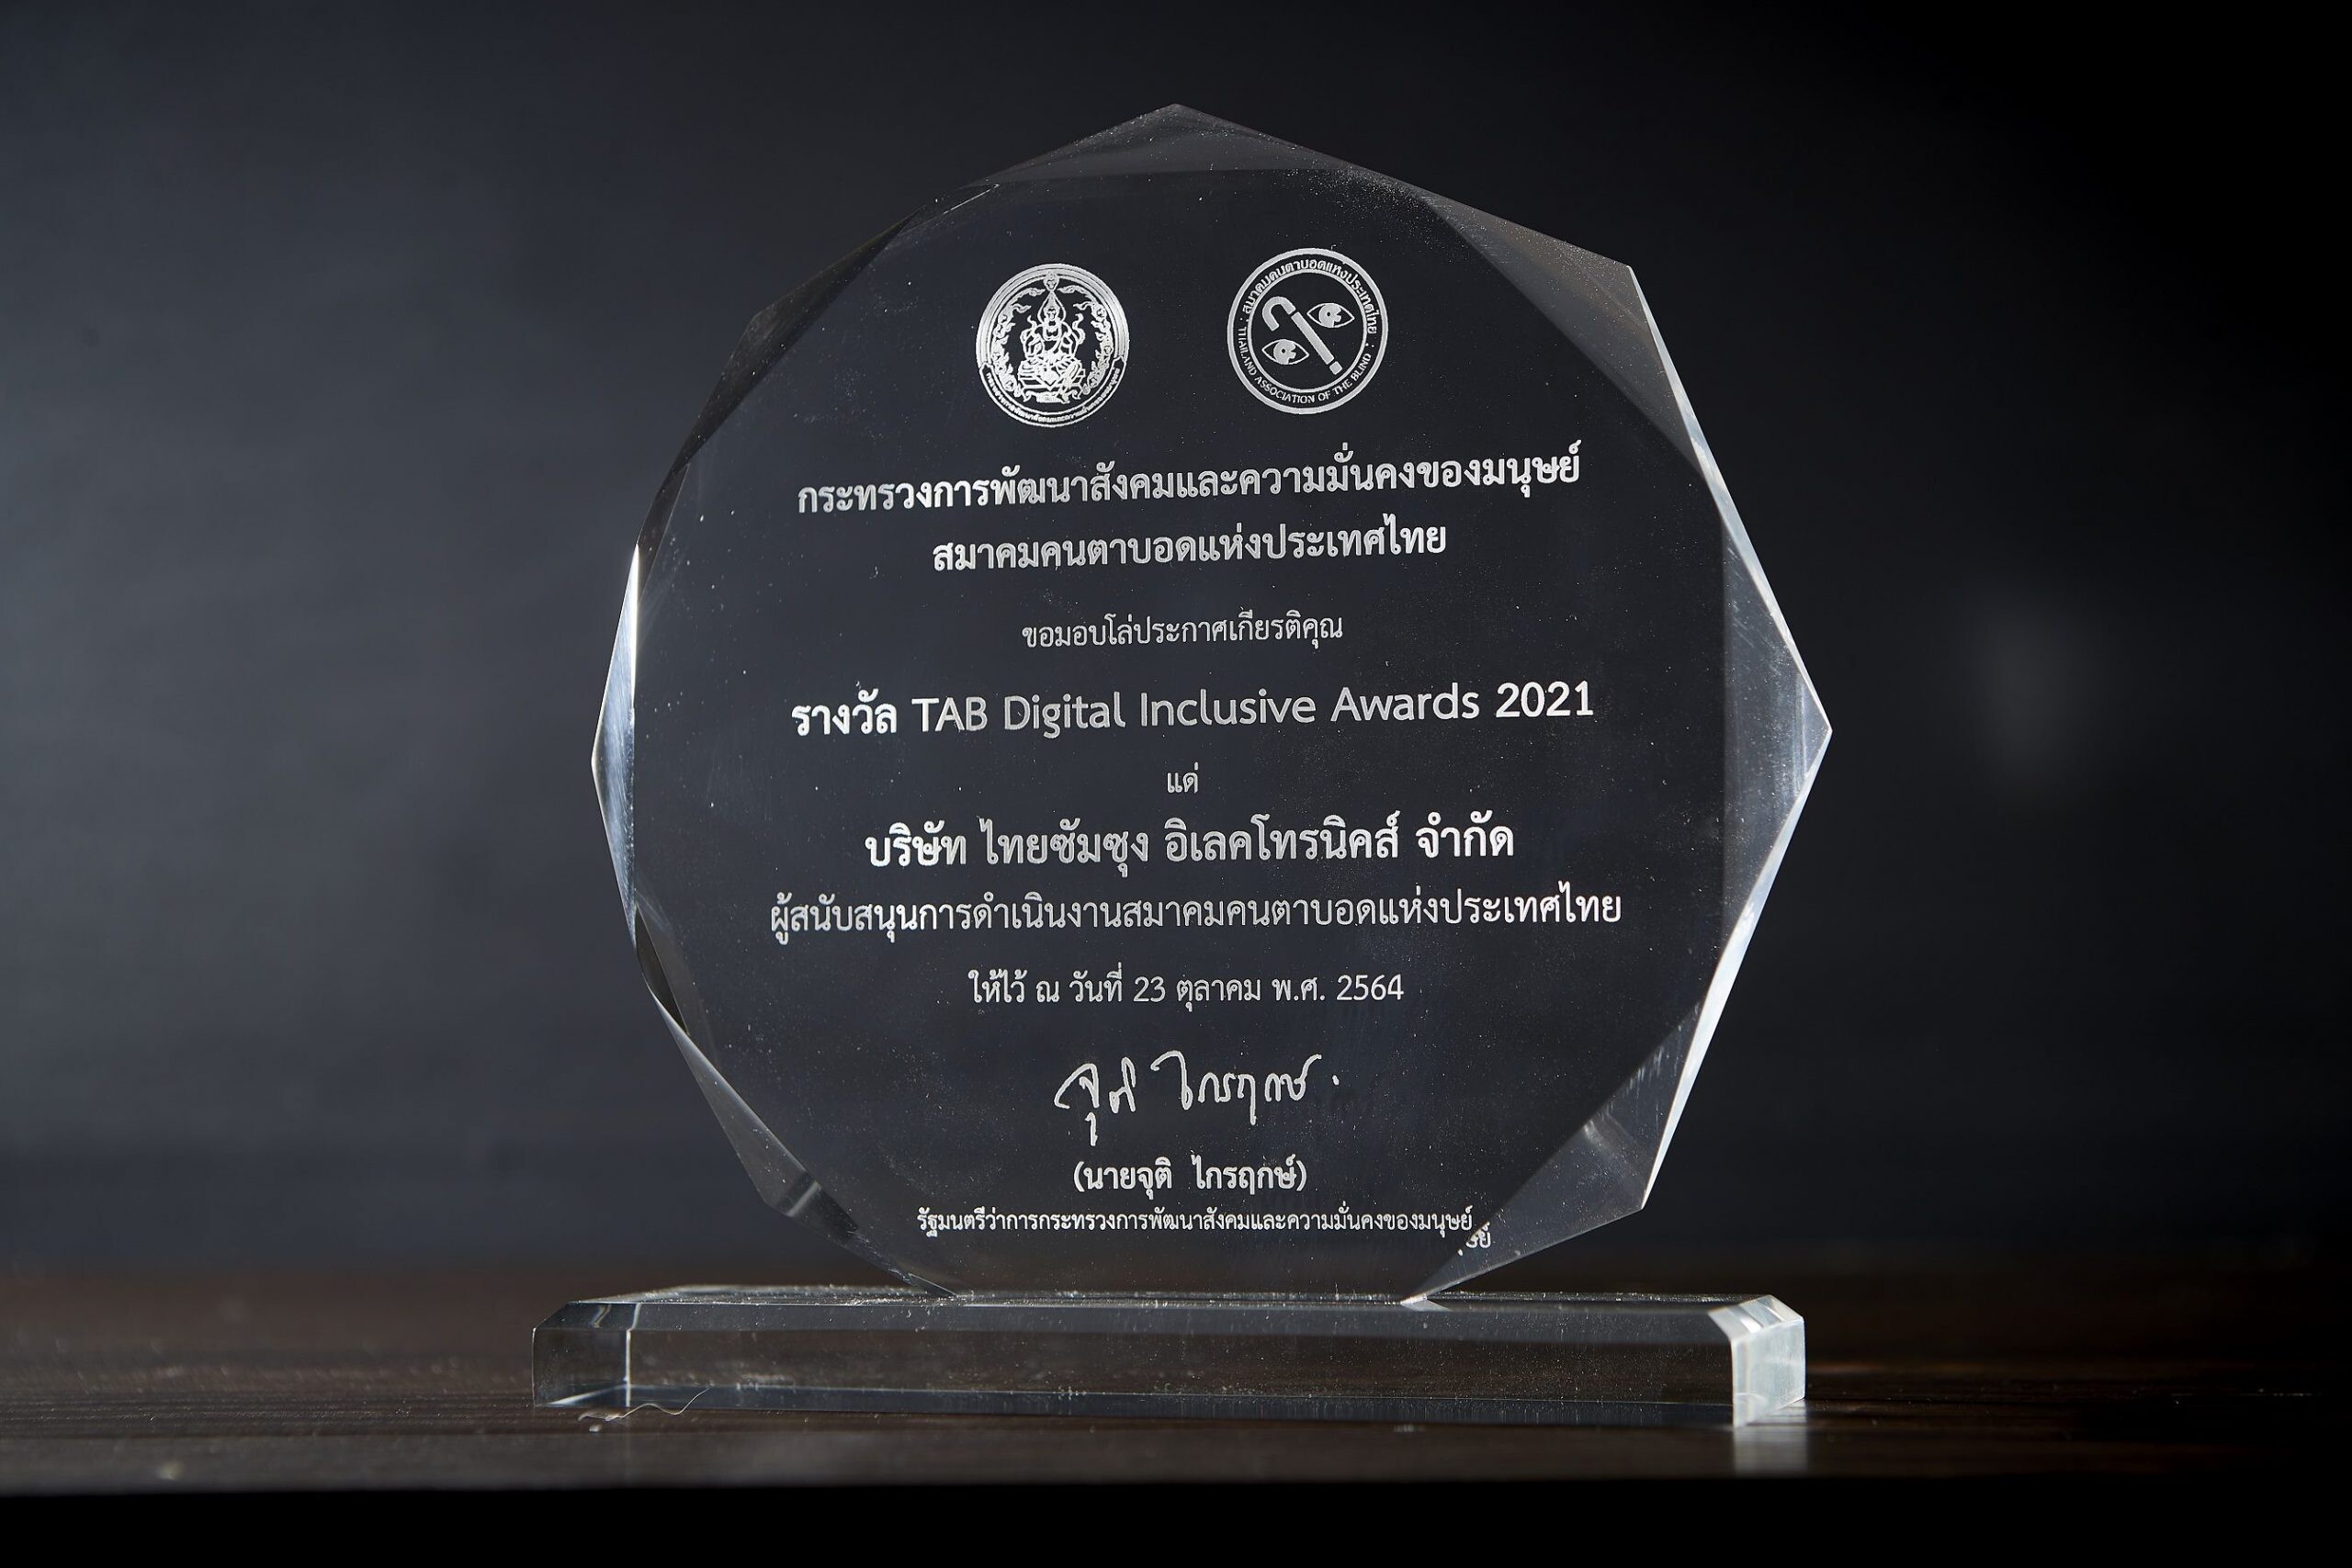 ซัมซุงรับรางวัล "TAB Digital Inclusive Awards 2021" จากสมาคมคนตาบอดฯ